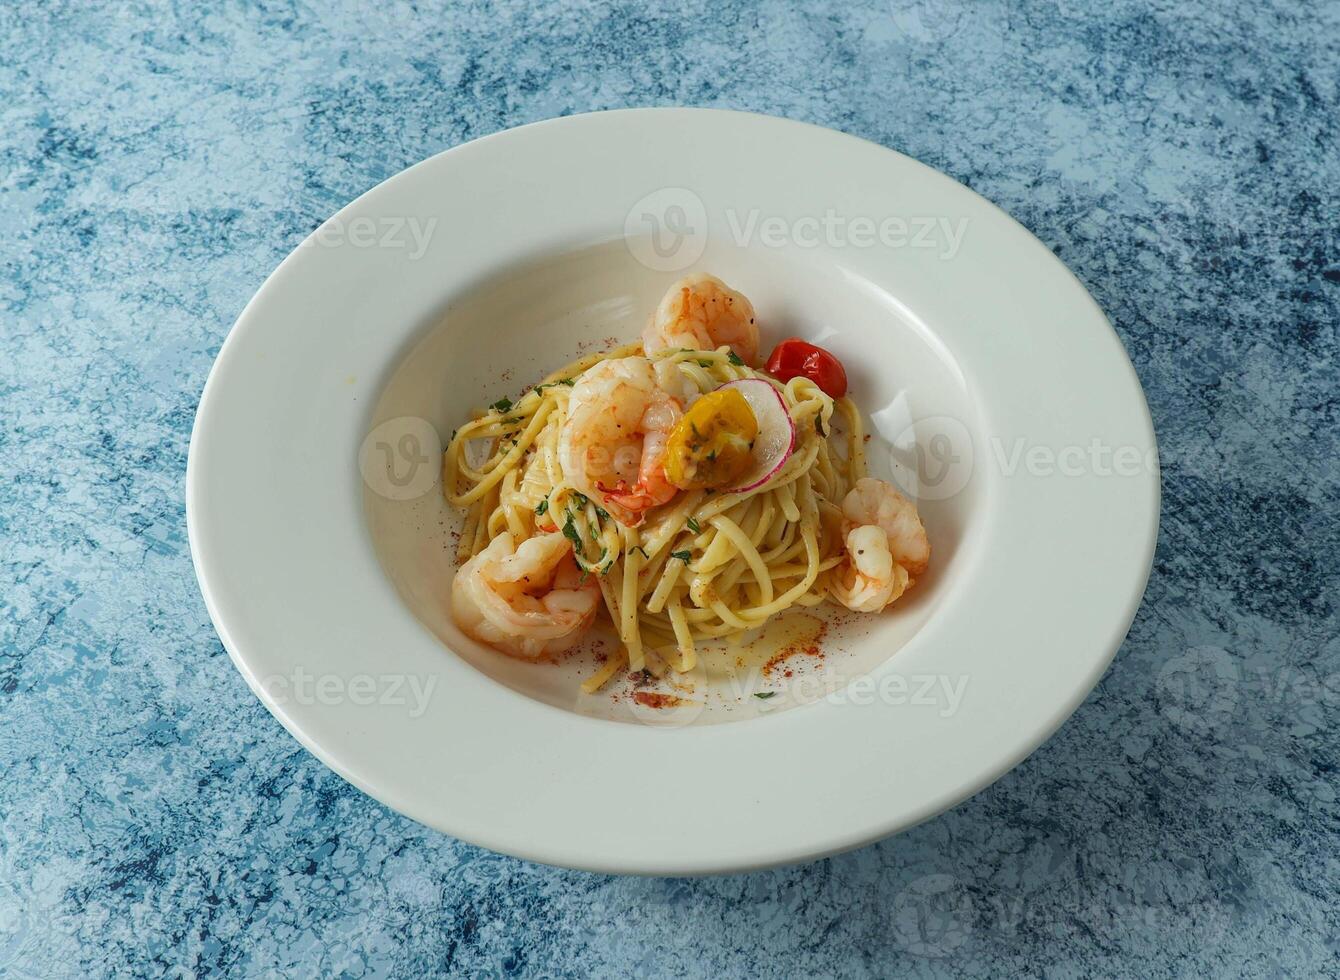 räka aglio olio eras i tallrik isolerat på bakgrund topp se av italiensk mat foto